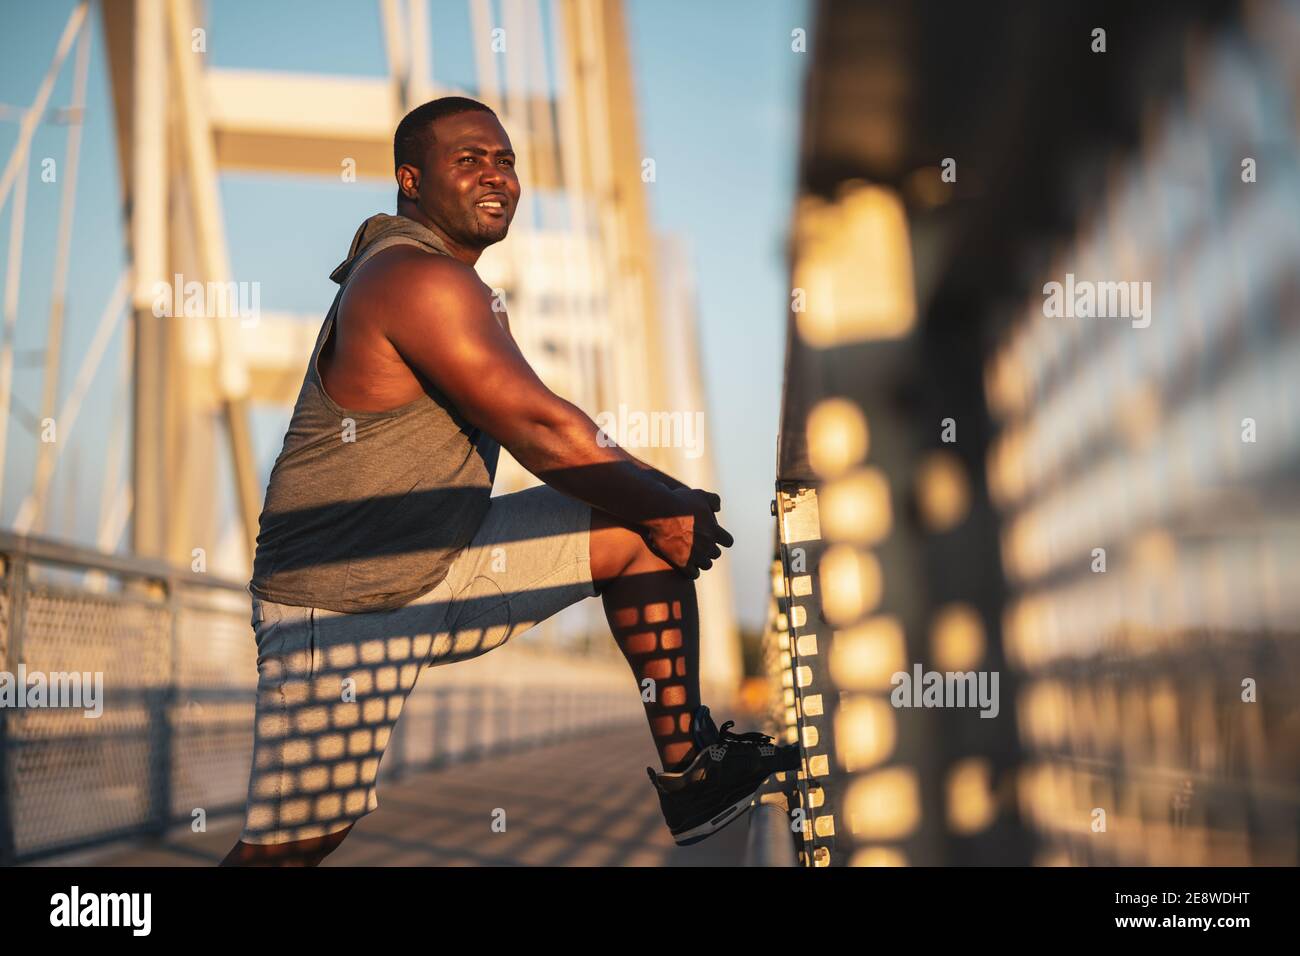 Porträt eines jungen afroamerikanischen Mannes in Sportkleidung, der trainiert, um sein Körpergewicht zu reduzieren. Stockfoto